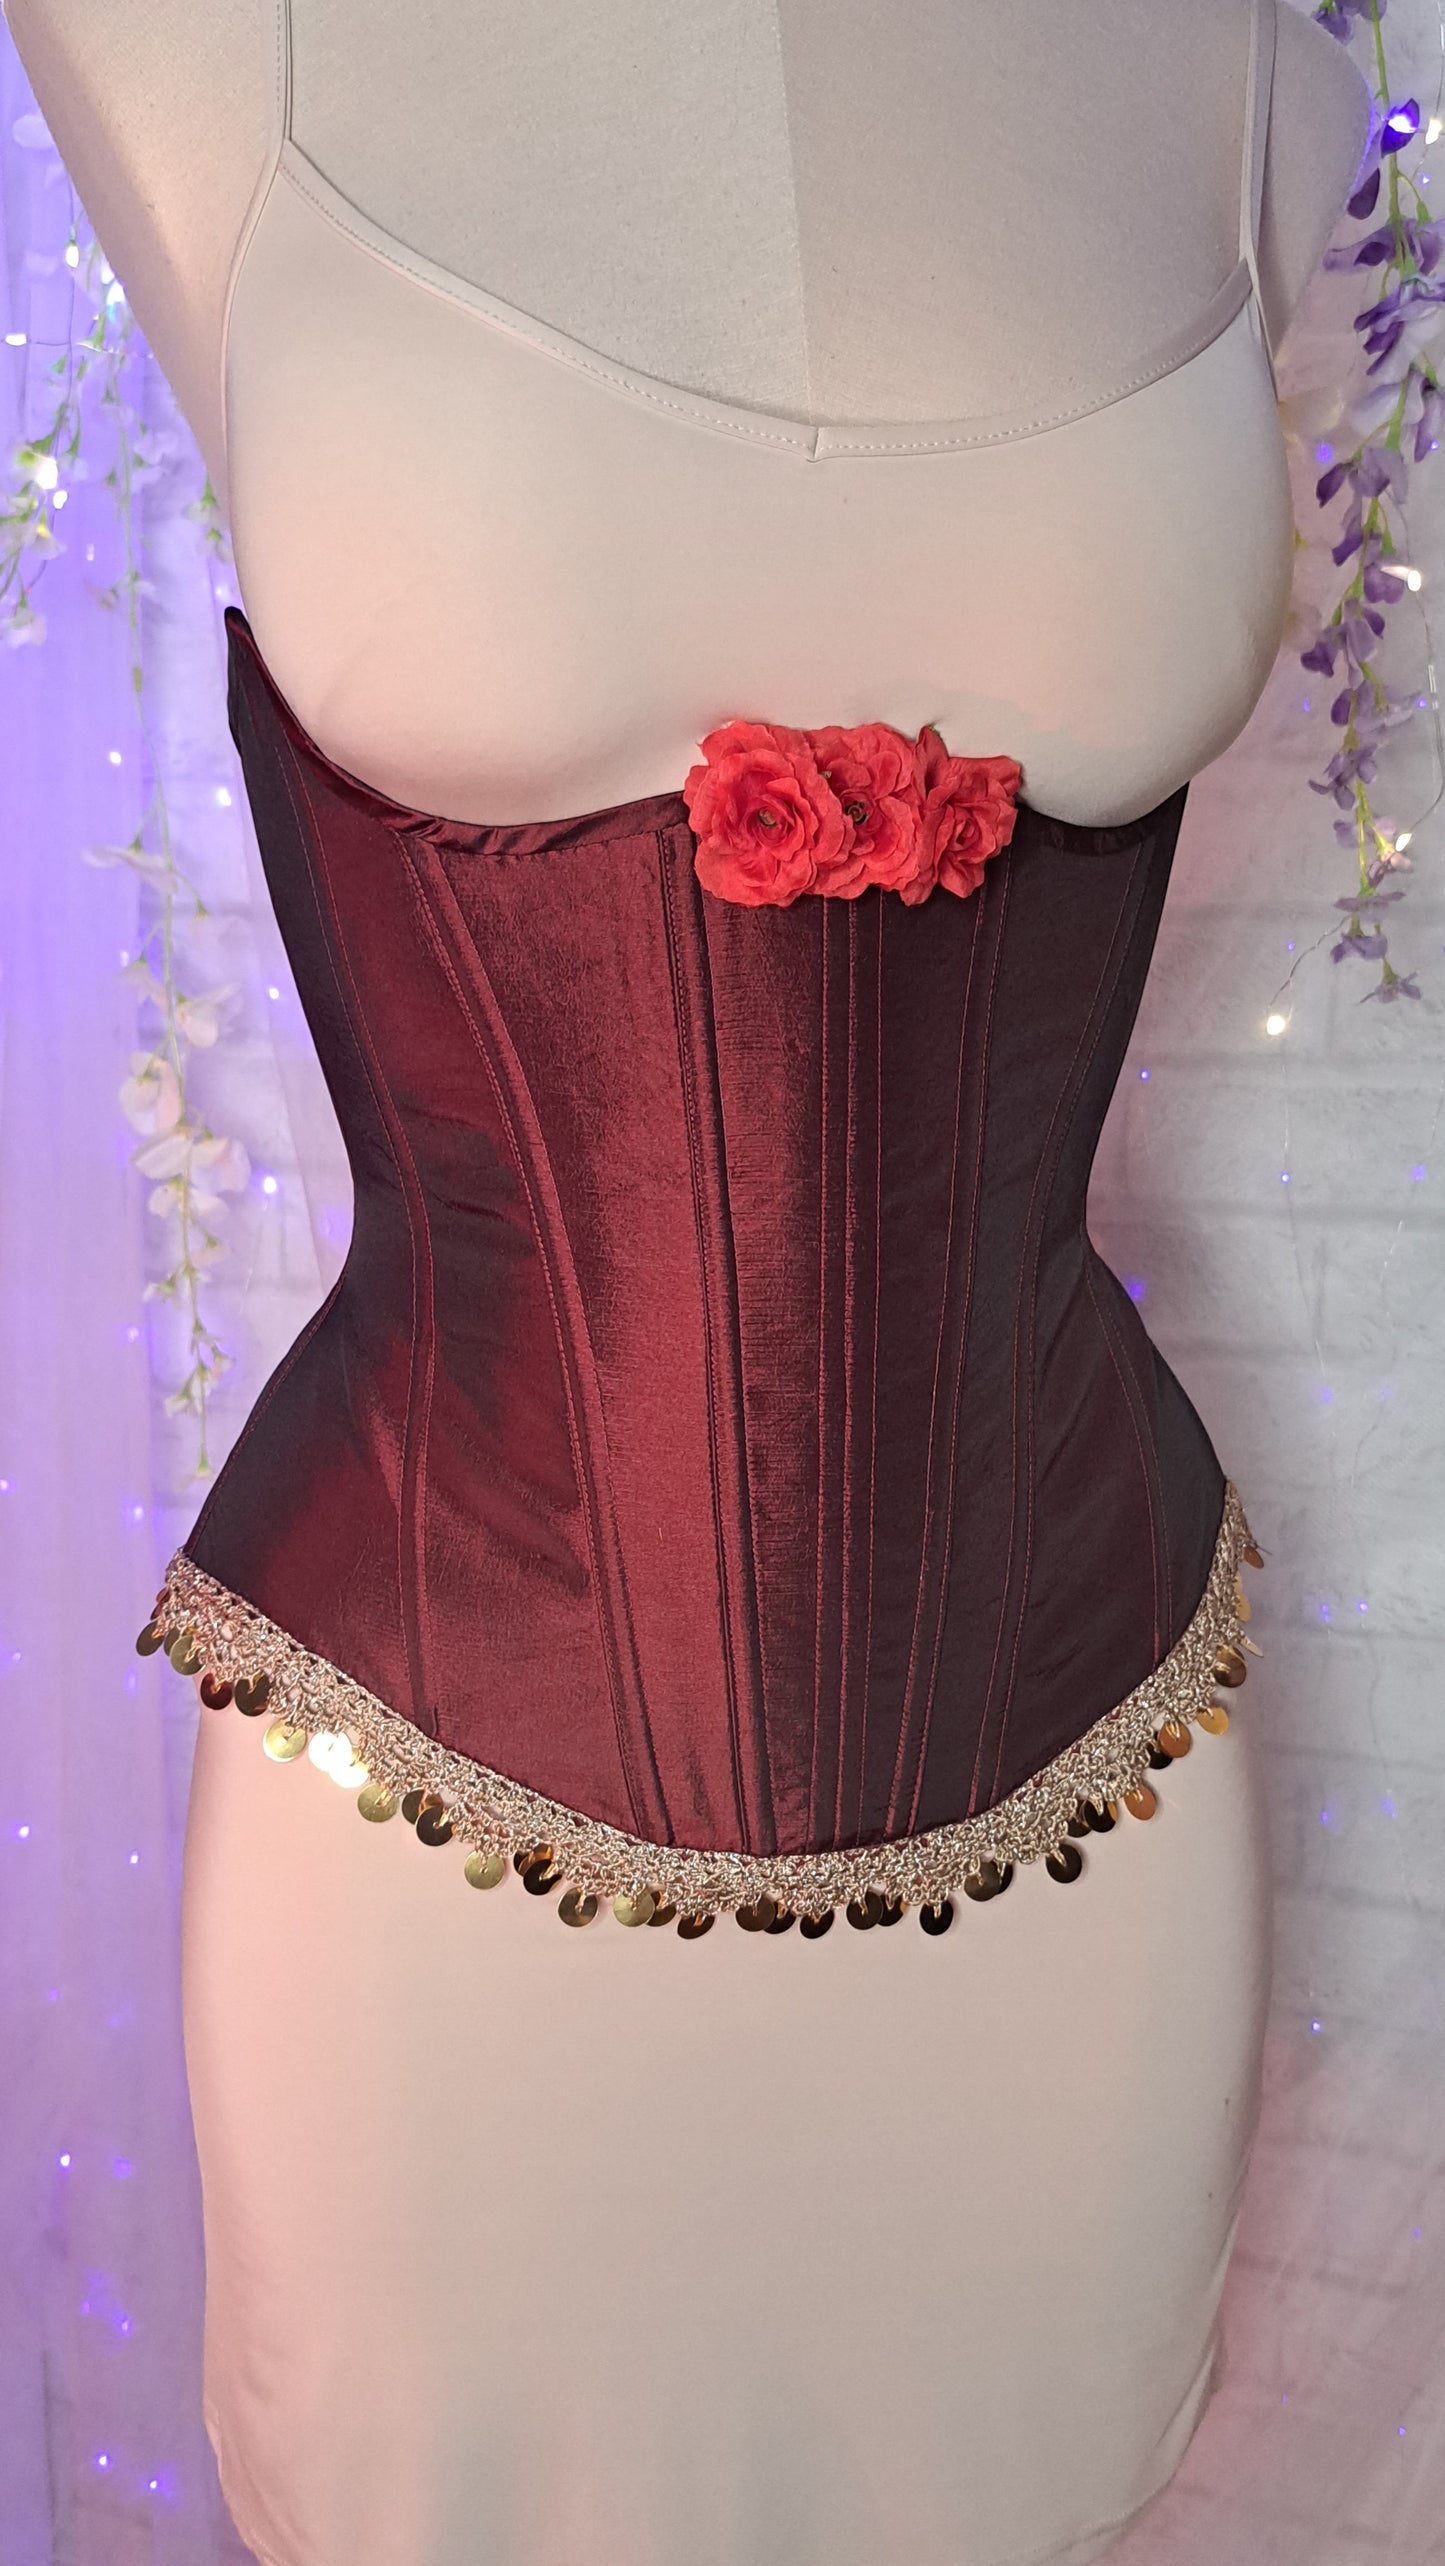 Bust cutout corset